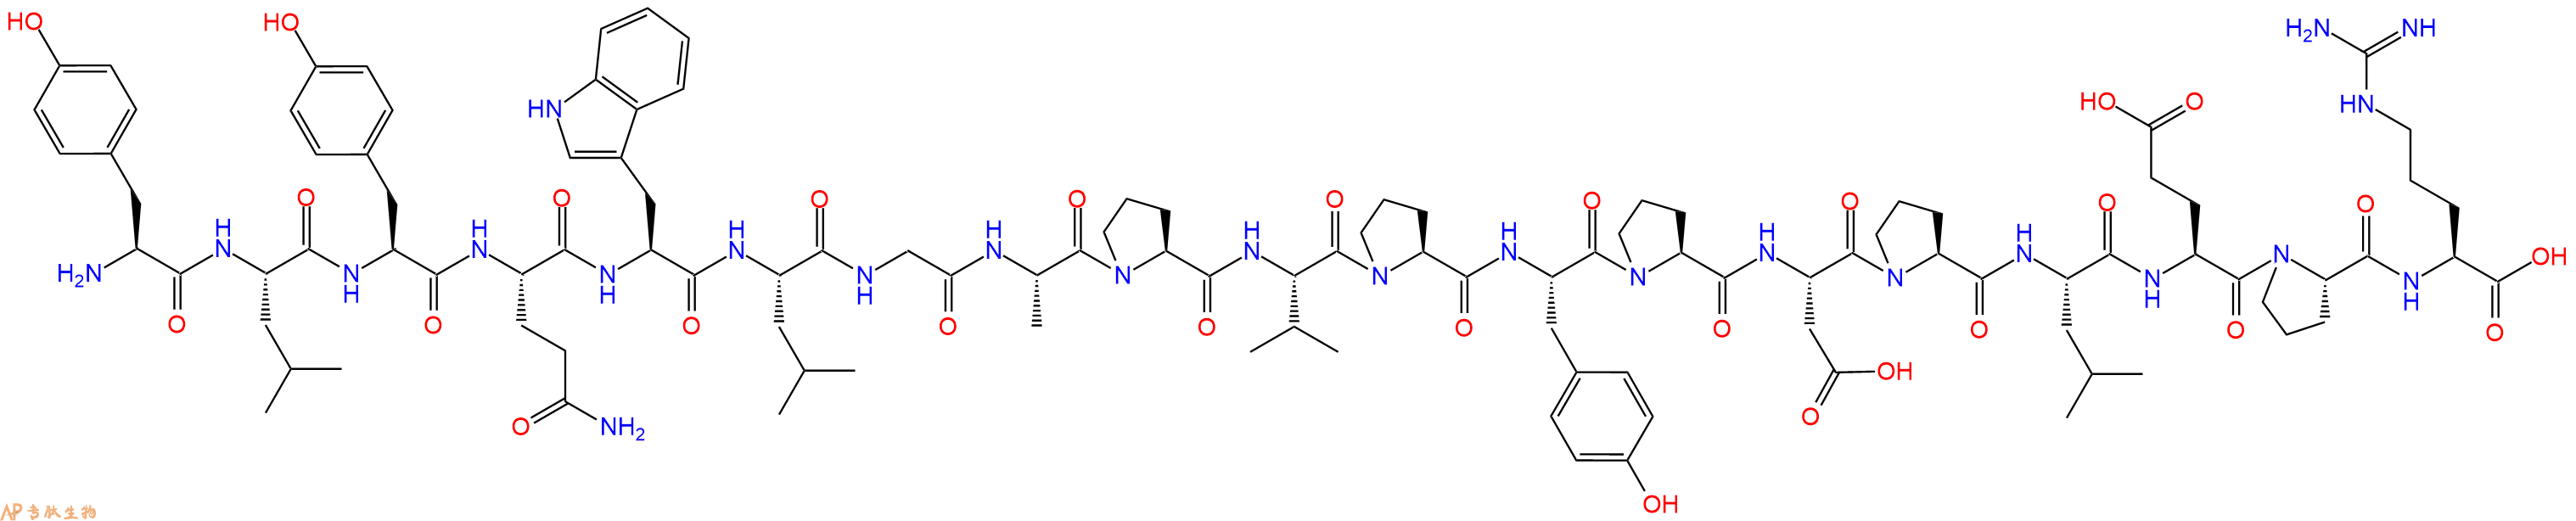 专肽生物产品十九肽YLYQWLGAPVPYPDPLEPR